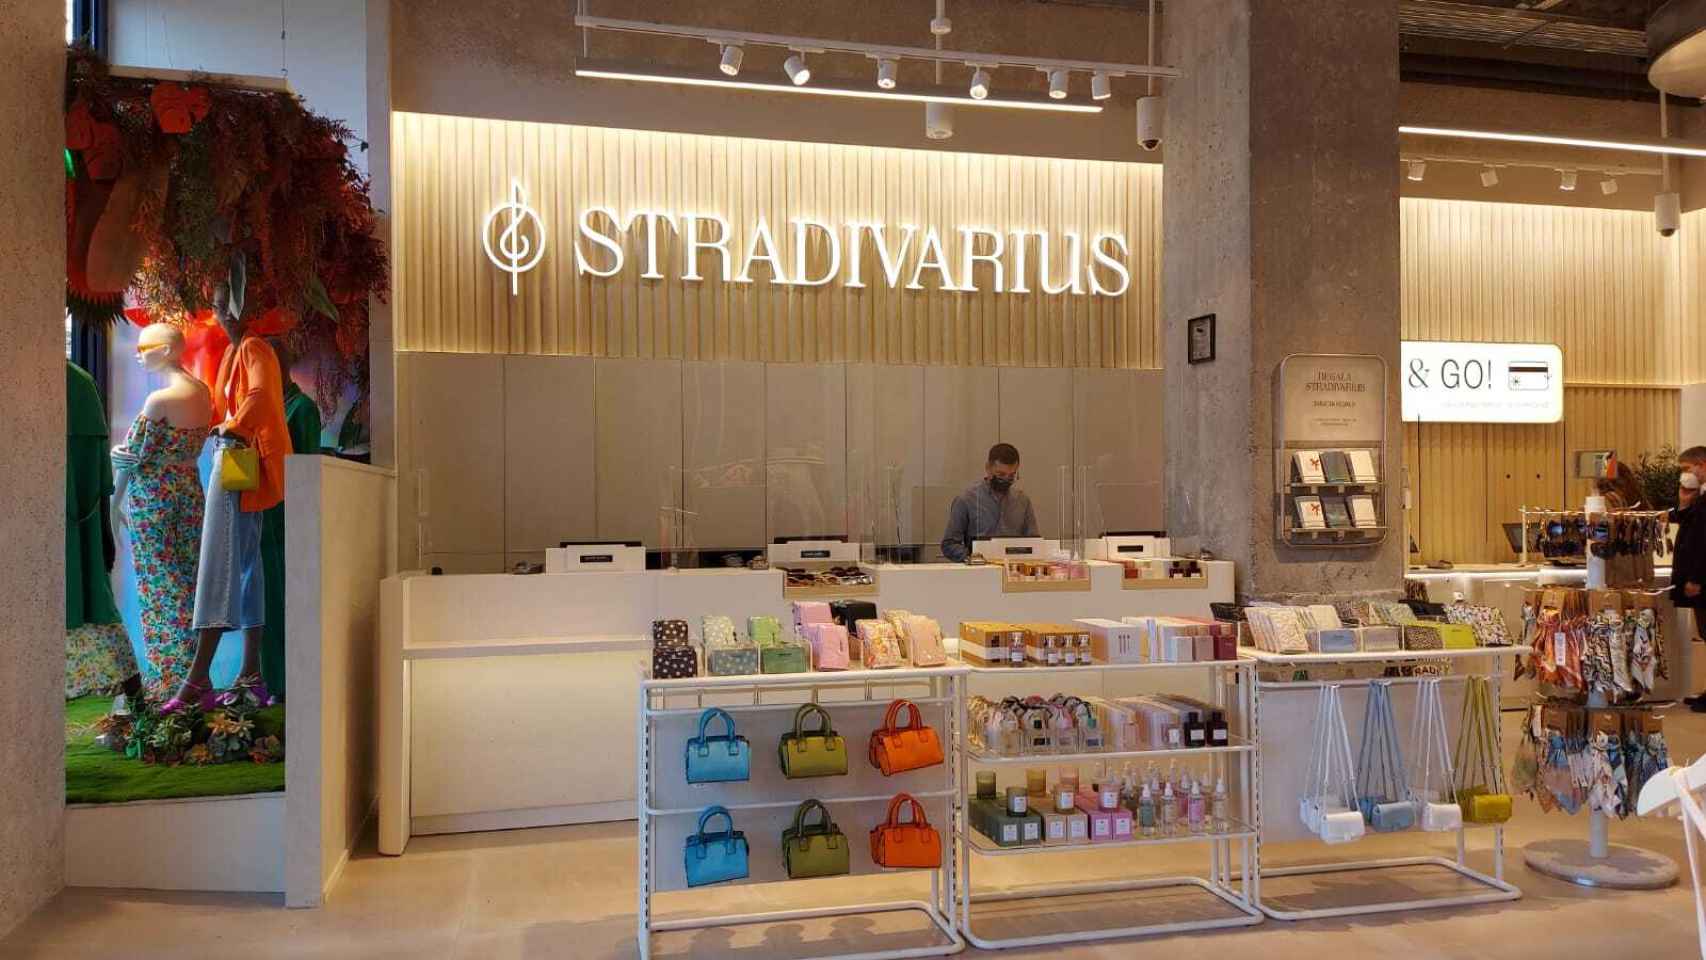 Stradivarius de Plaza España.